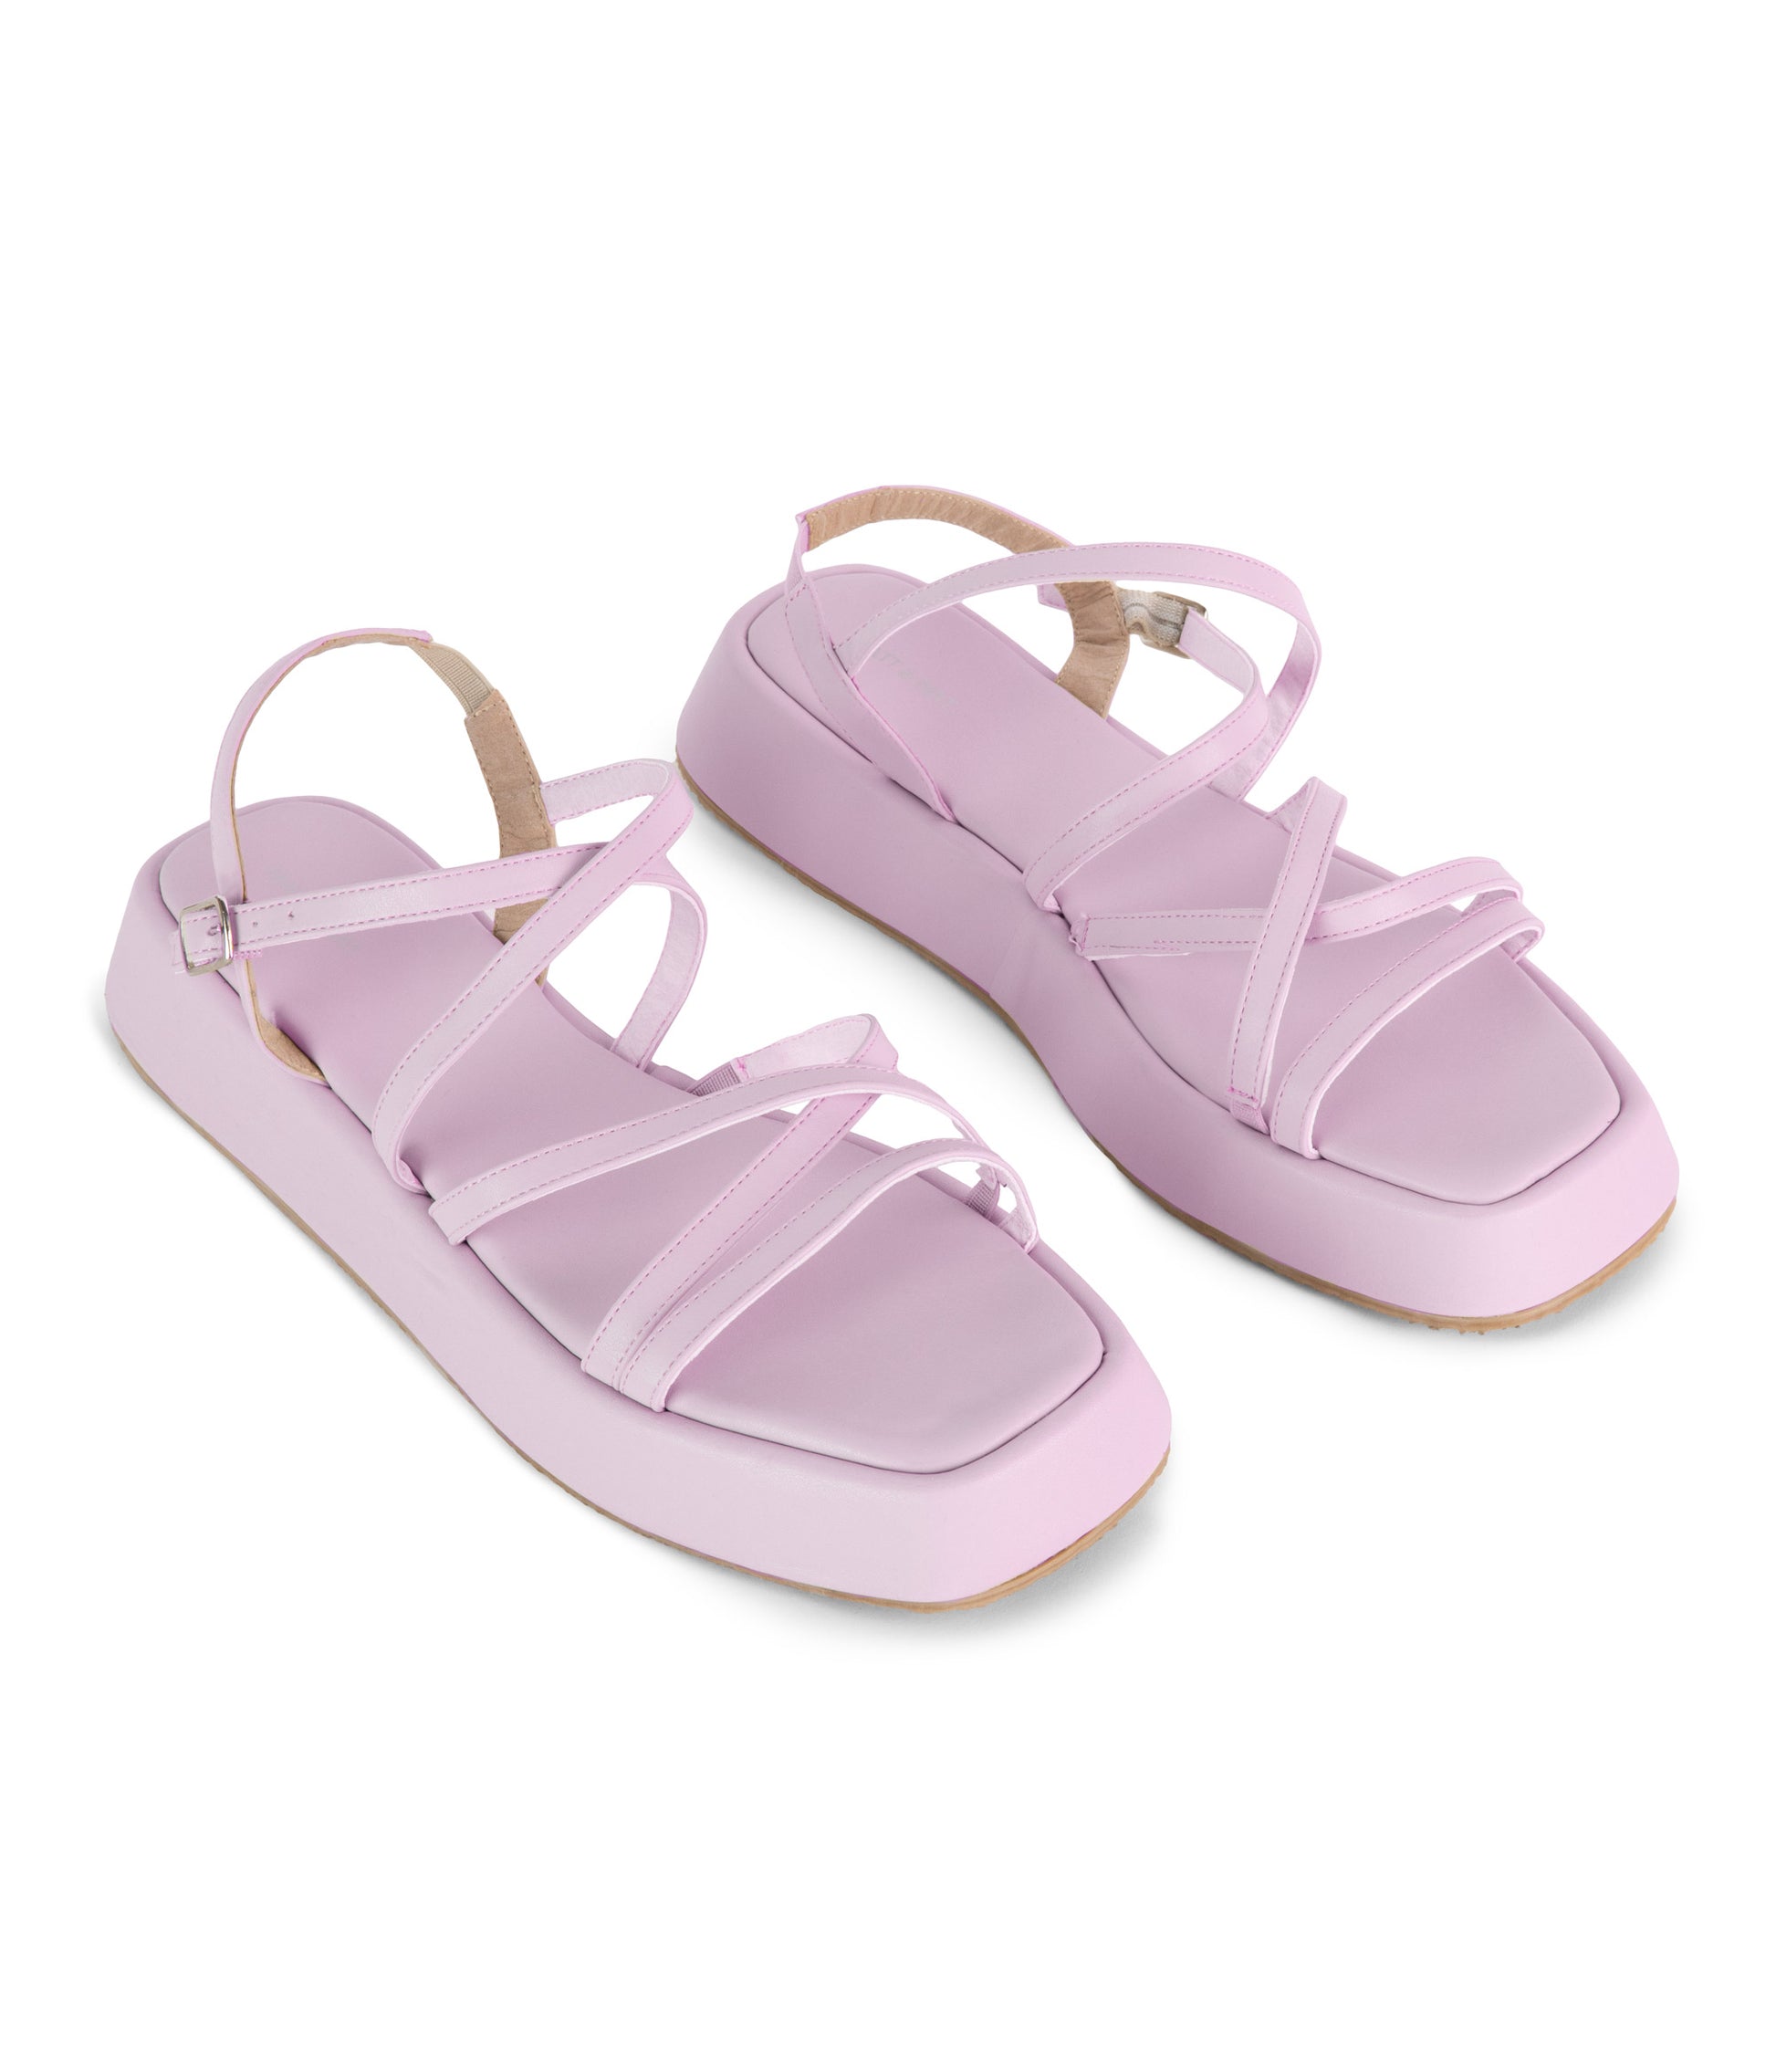 variant:: lilas -- niccol shoe lilas